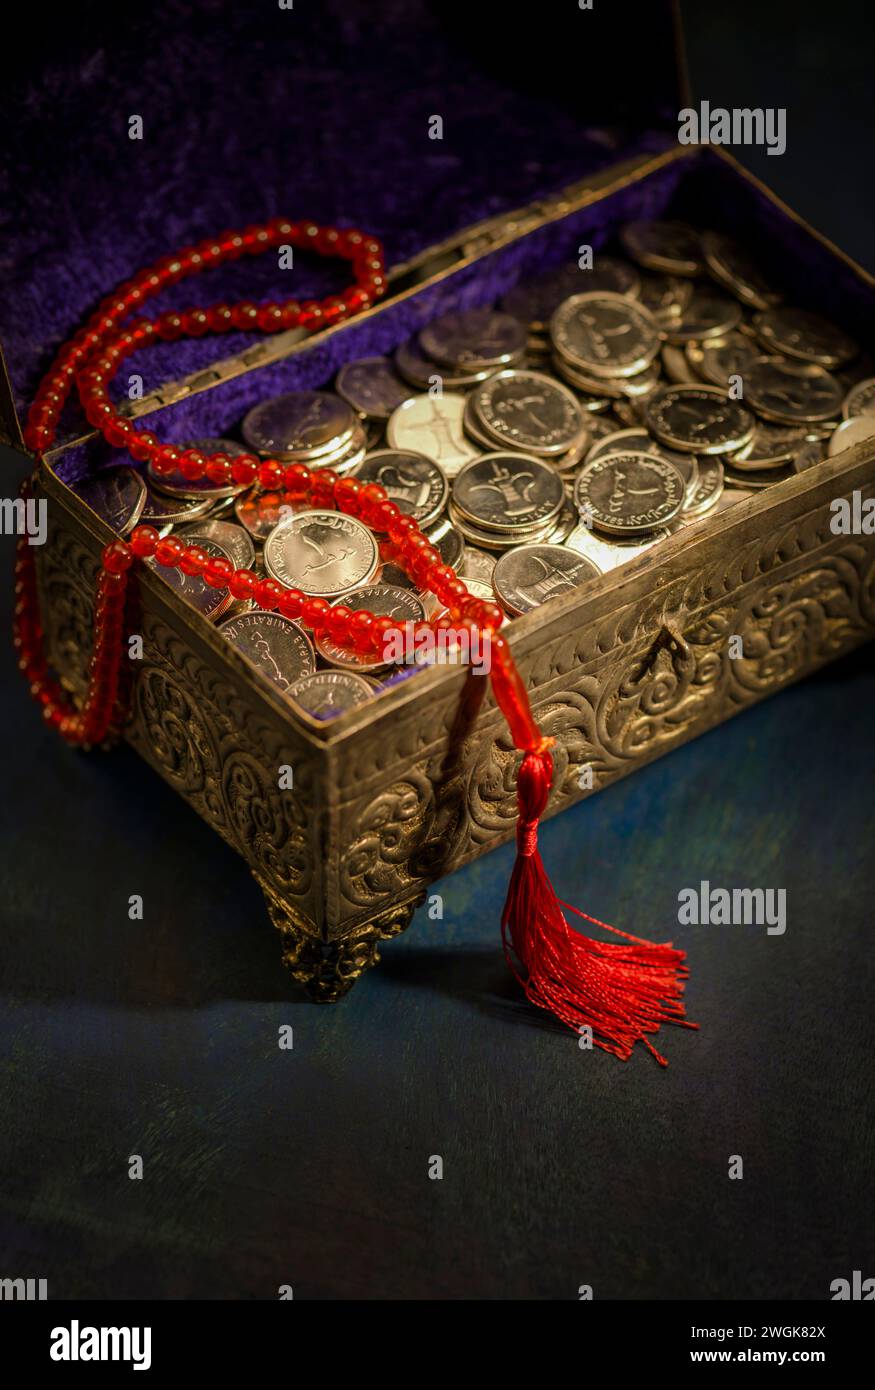 Eine Schatzkiste gefüllt mit VAE-Dirham-Münzen mit islamischem Rosenkranz. "Sharia-konforme Finanzen" - Ein konzeptionelles Bild. Stockfoto